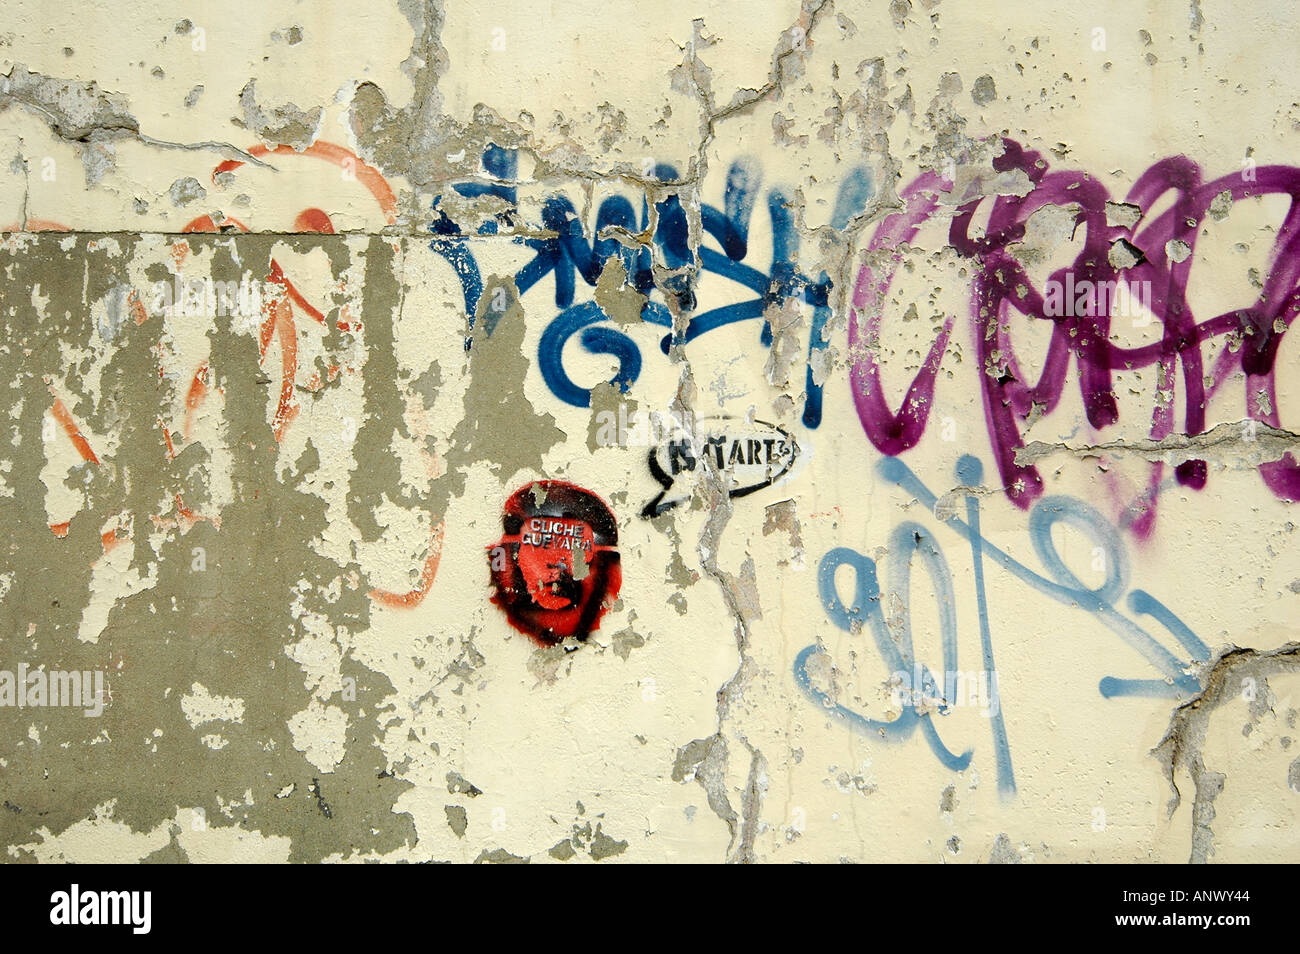 Graffiti Graffiti grafiti sur le mur montrant le logo de l'icône de Che Guevara personne Banque D'Images